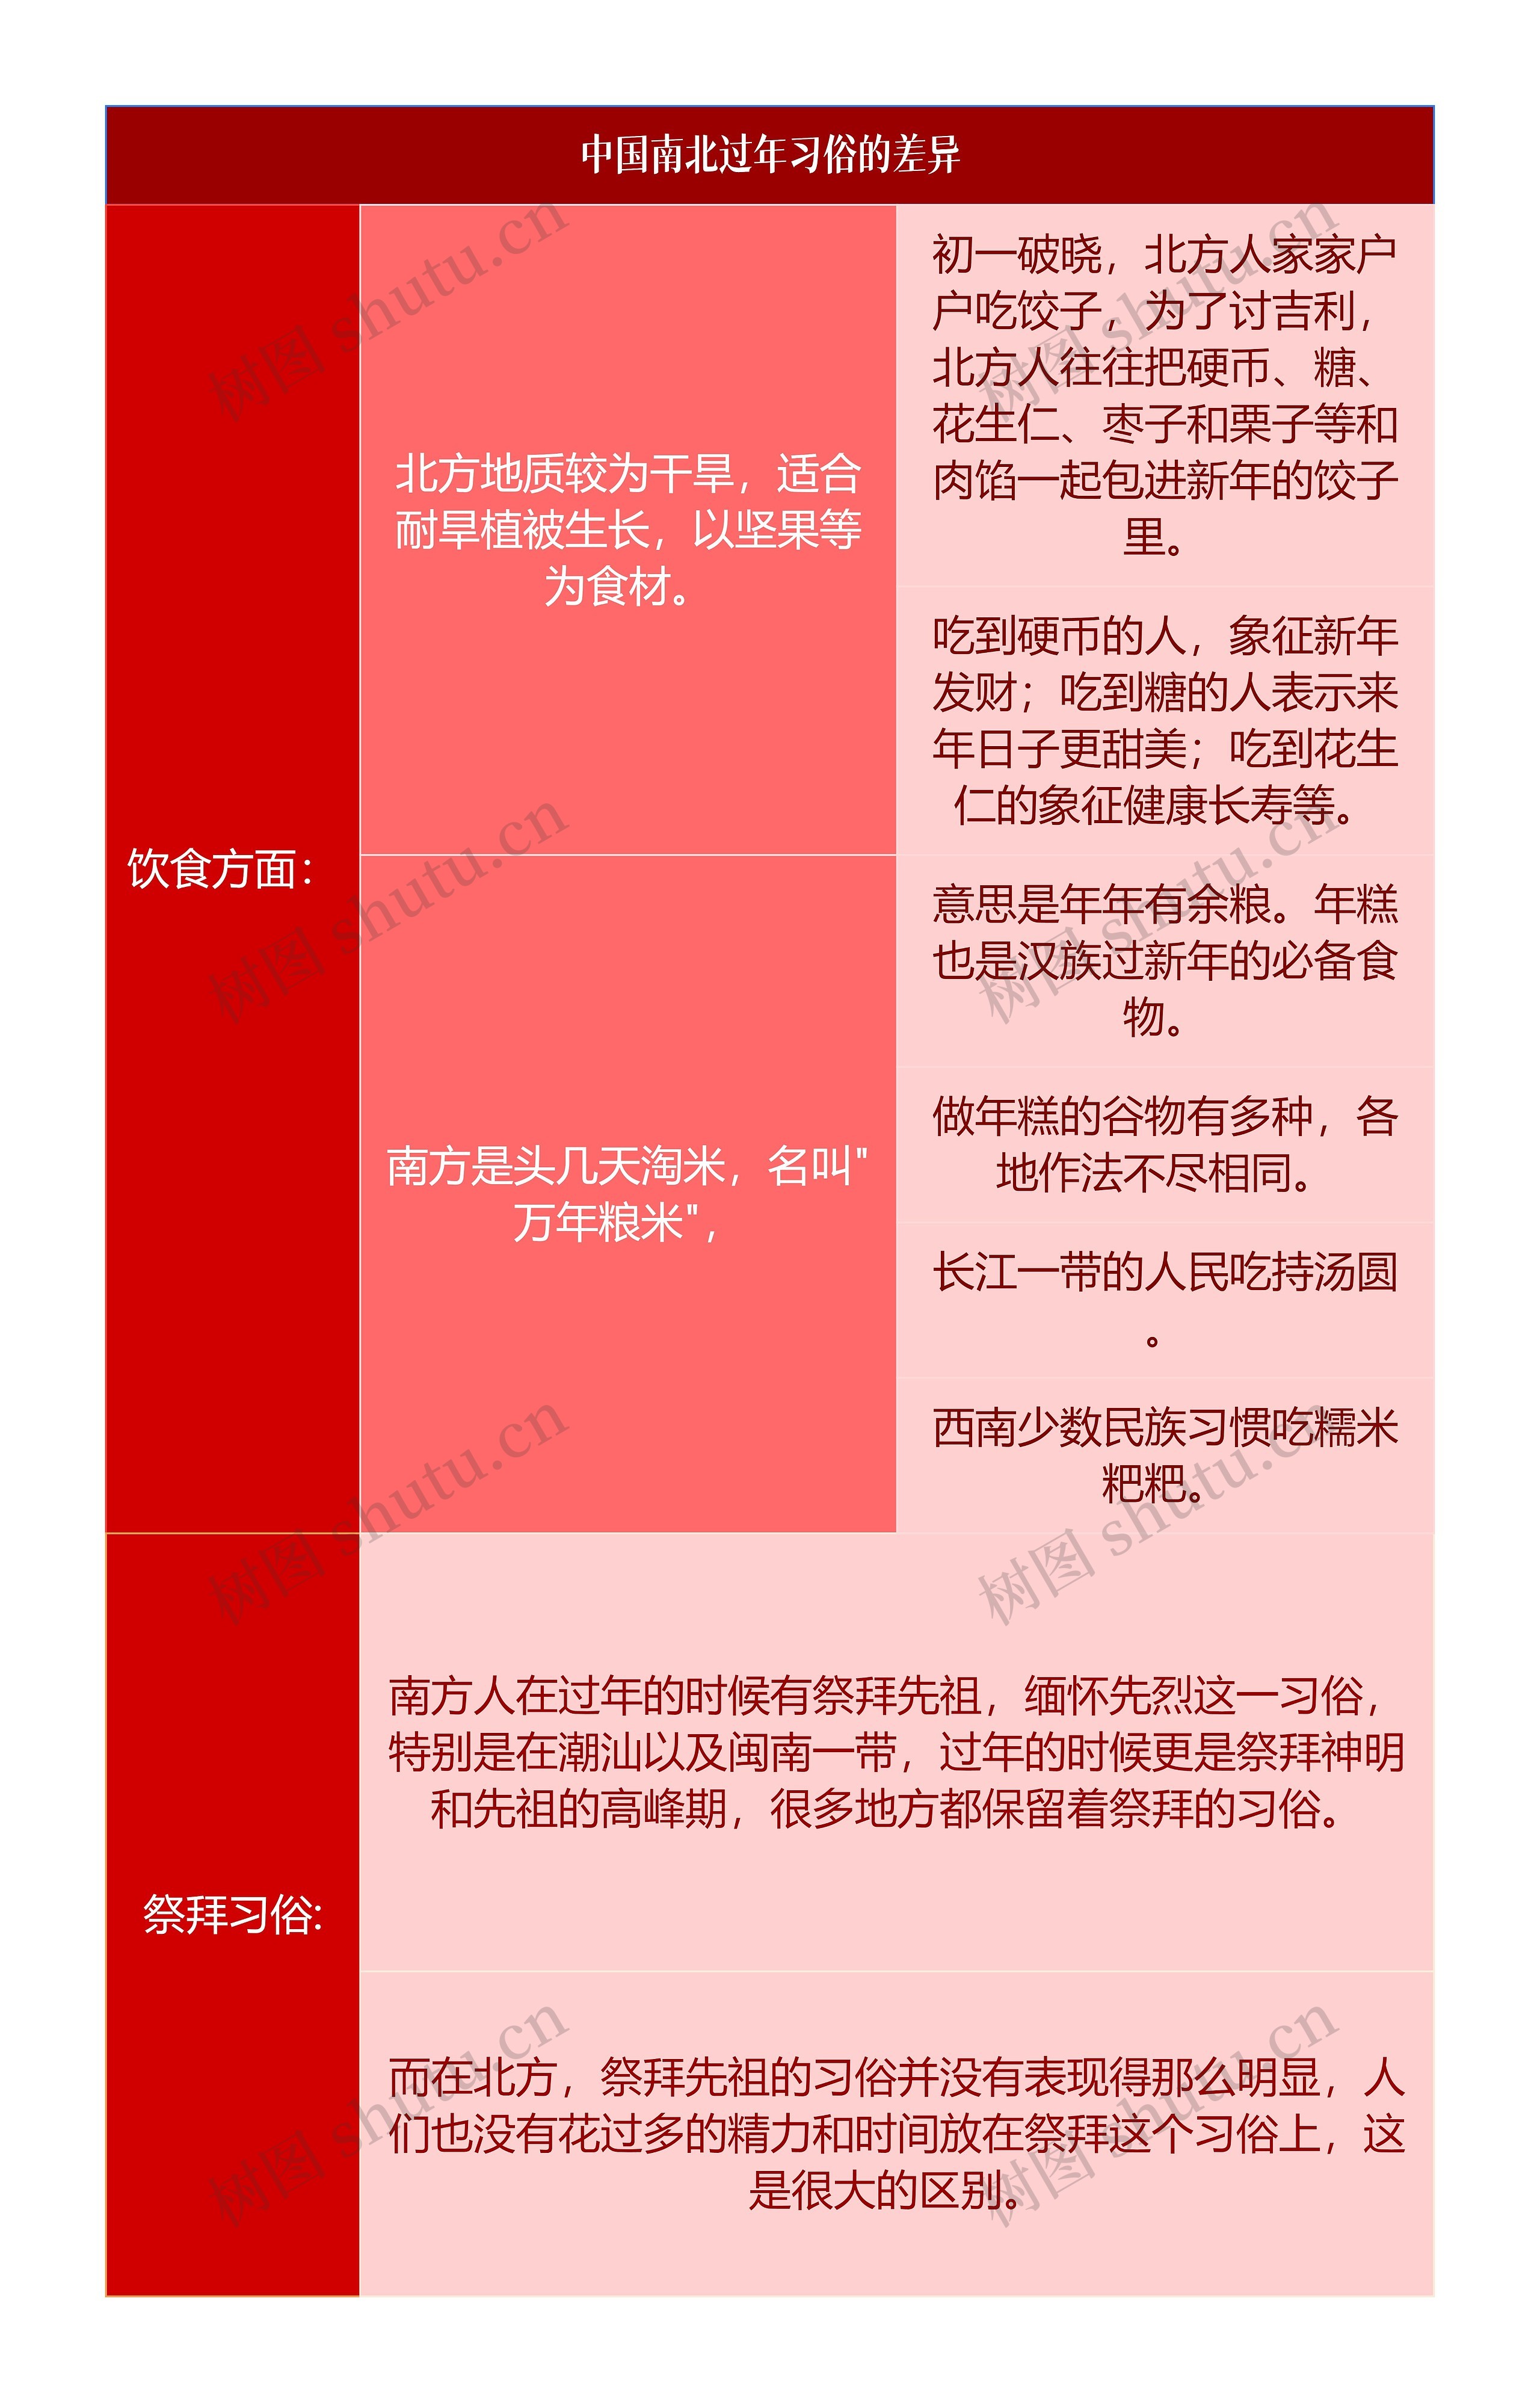 中国南北过年习俗的差异简图思维导图